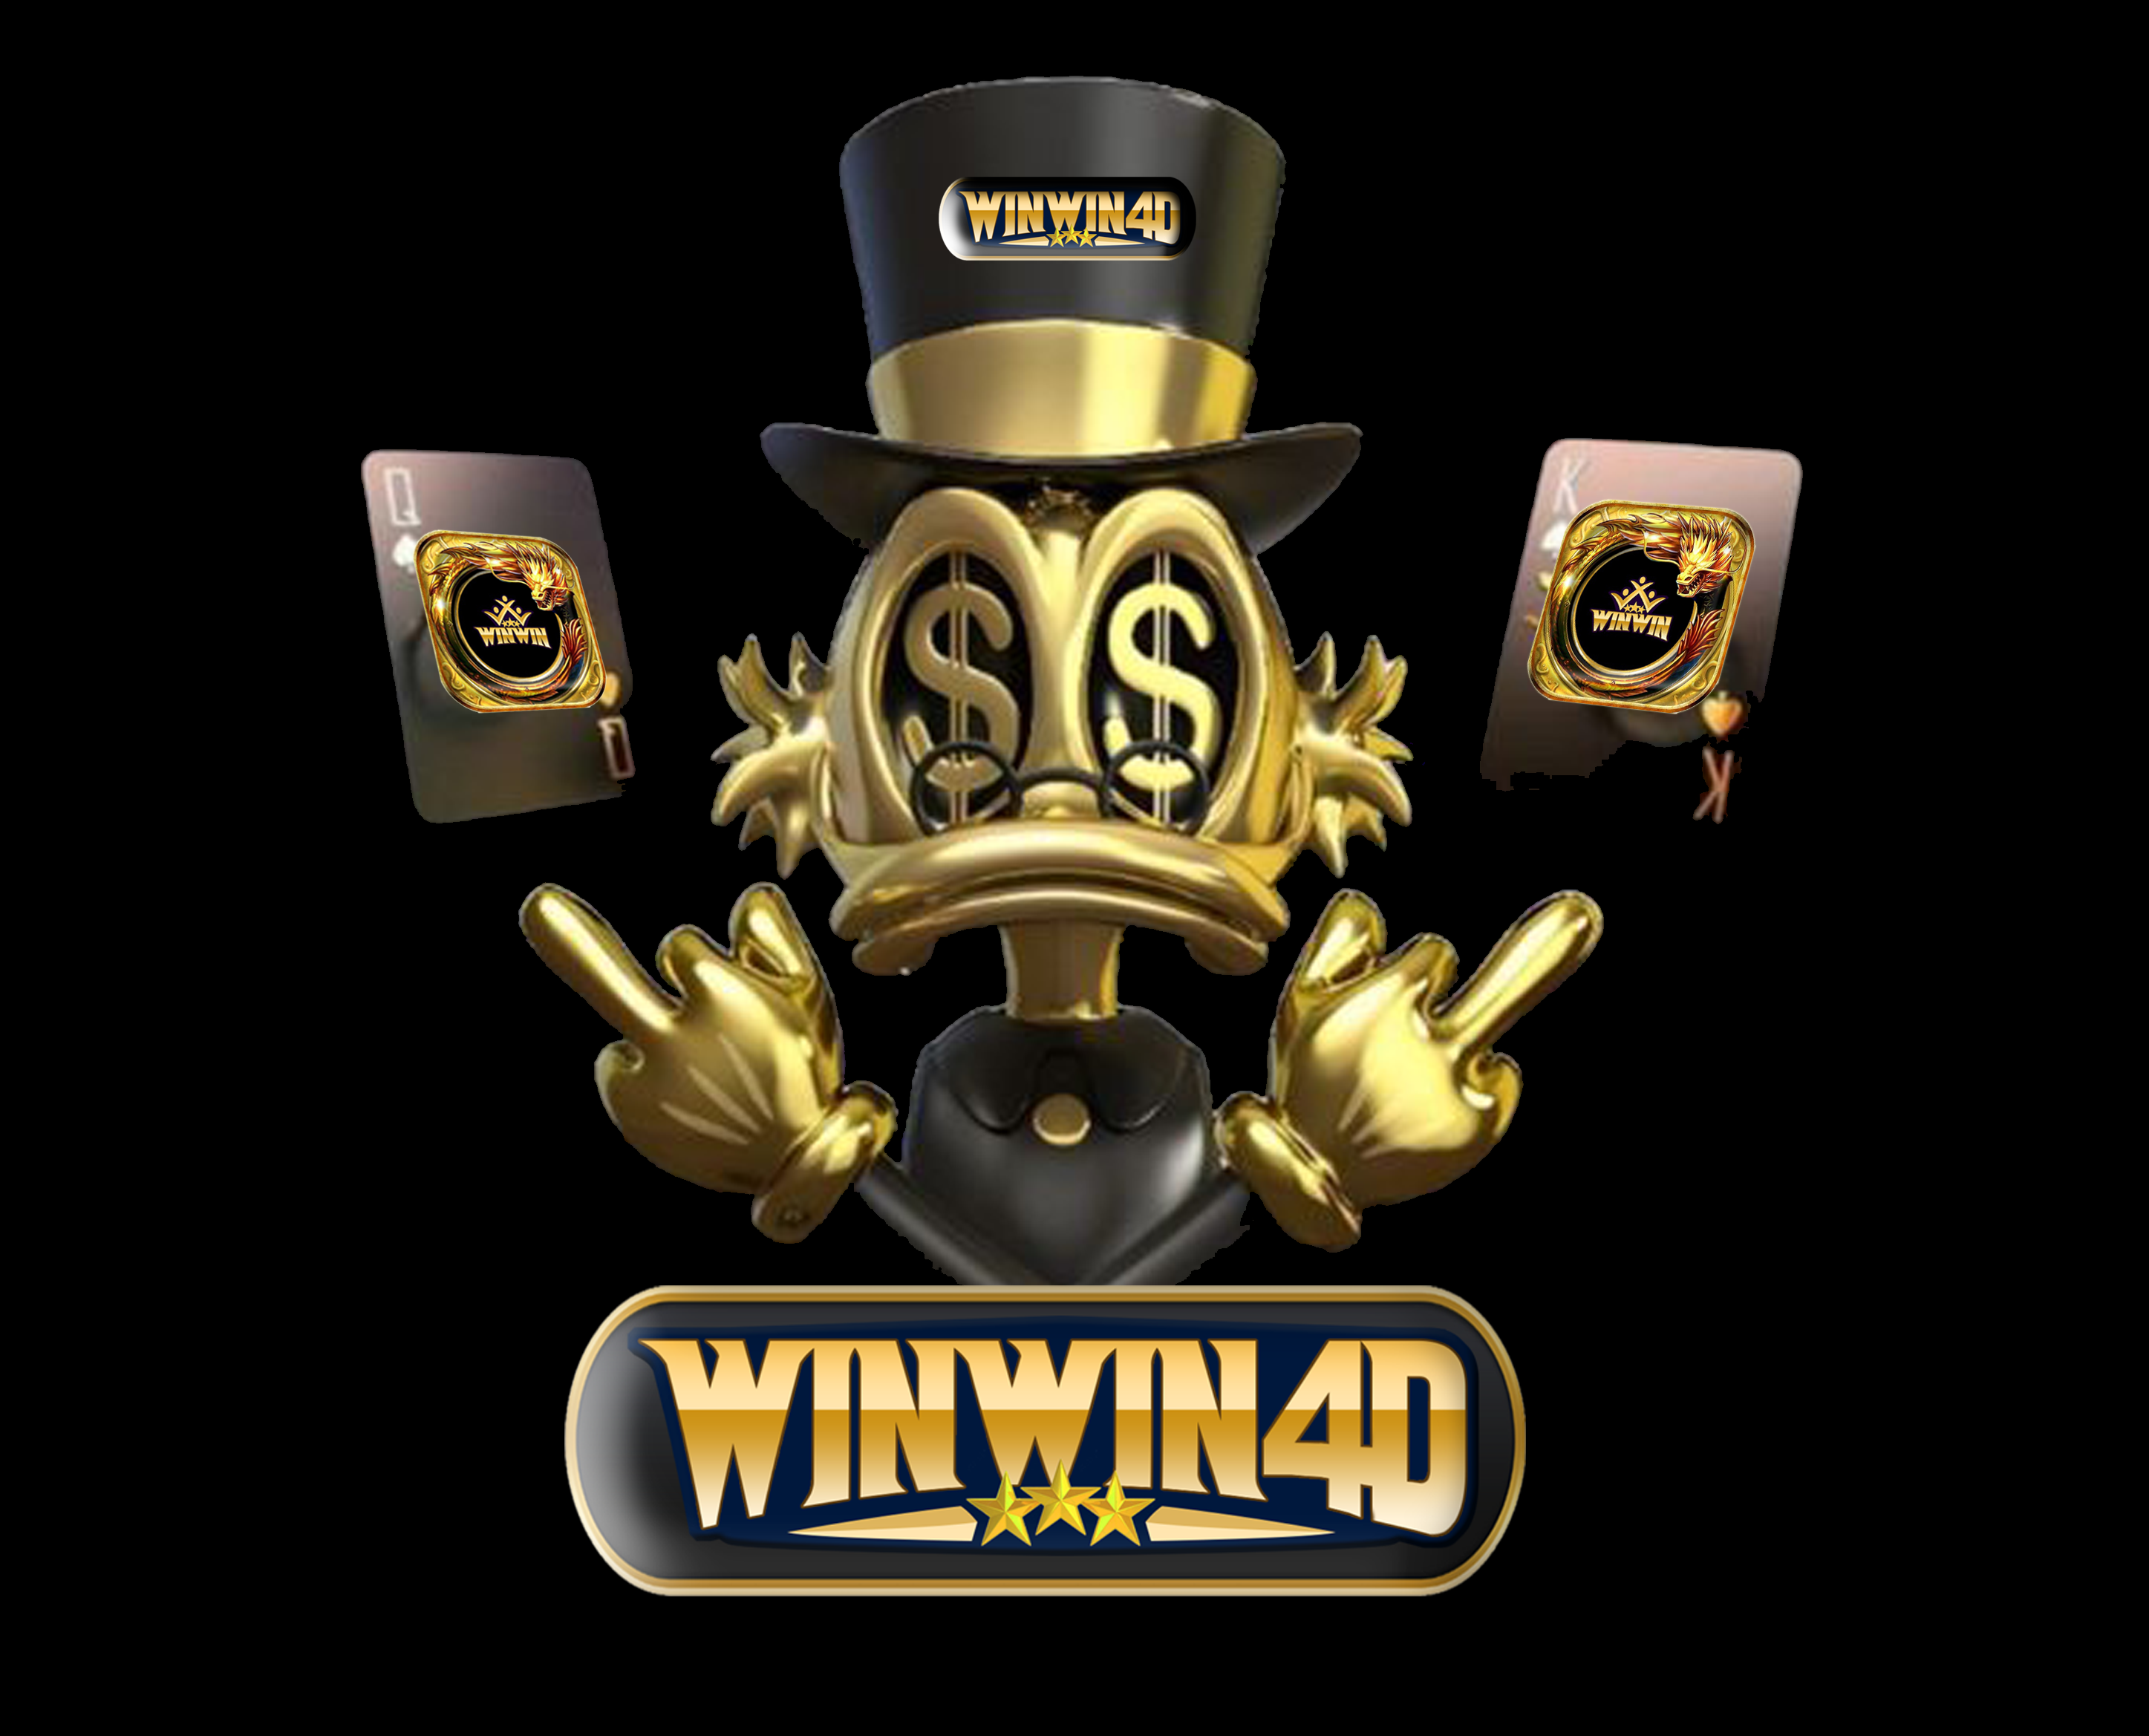 WINWIN4D GAME ONLINE TERPERCAYA BONUS NEW MEMBER 30%